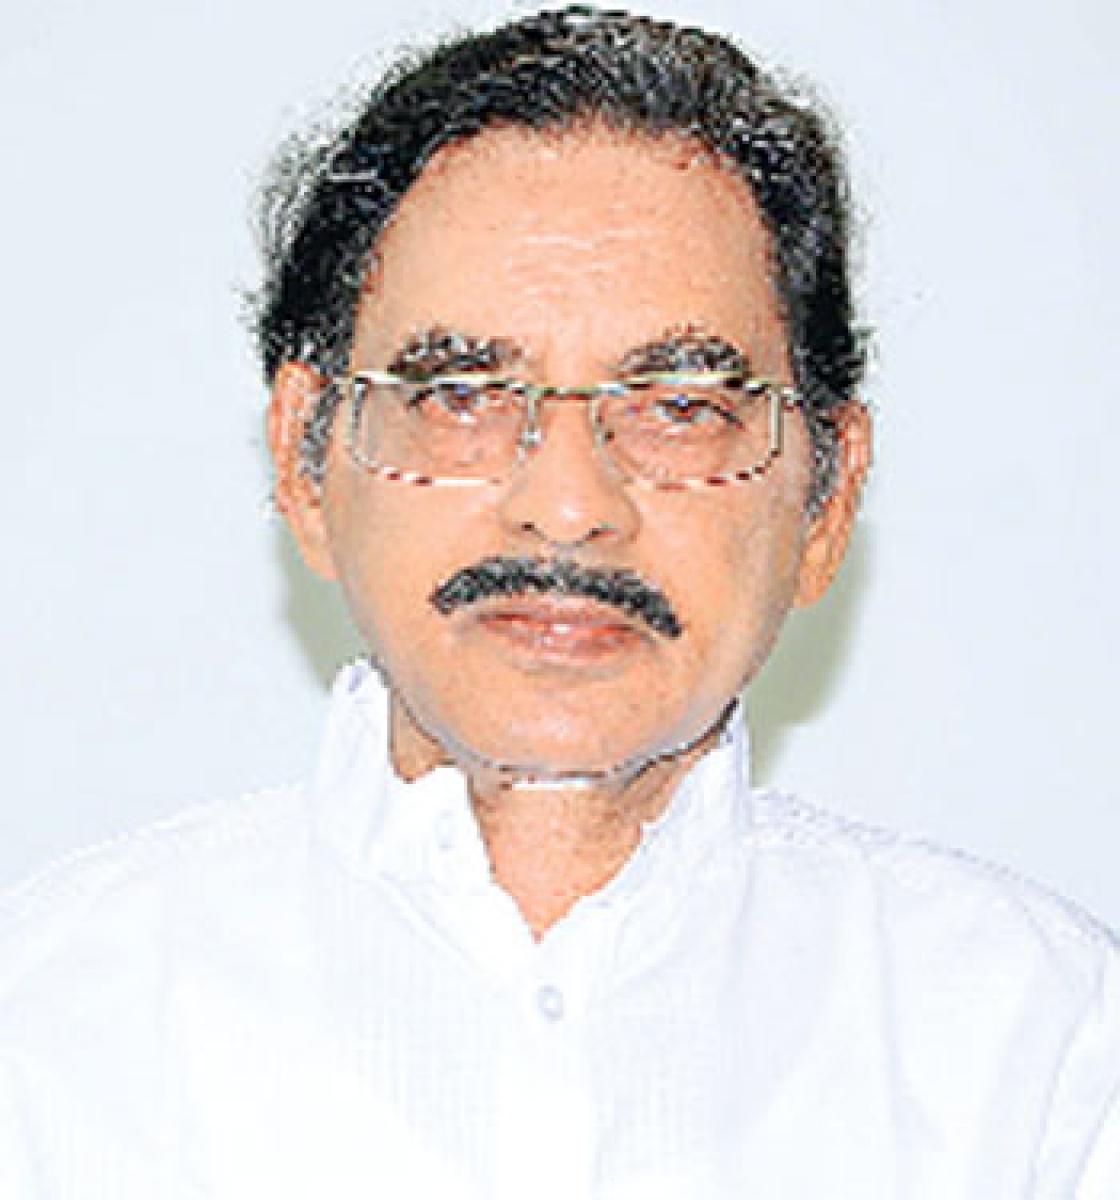 Deekshithulu is Chairman of AP Press Academy